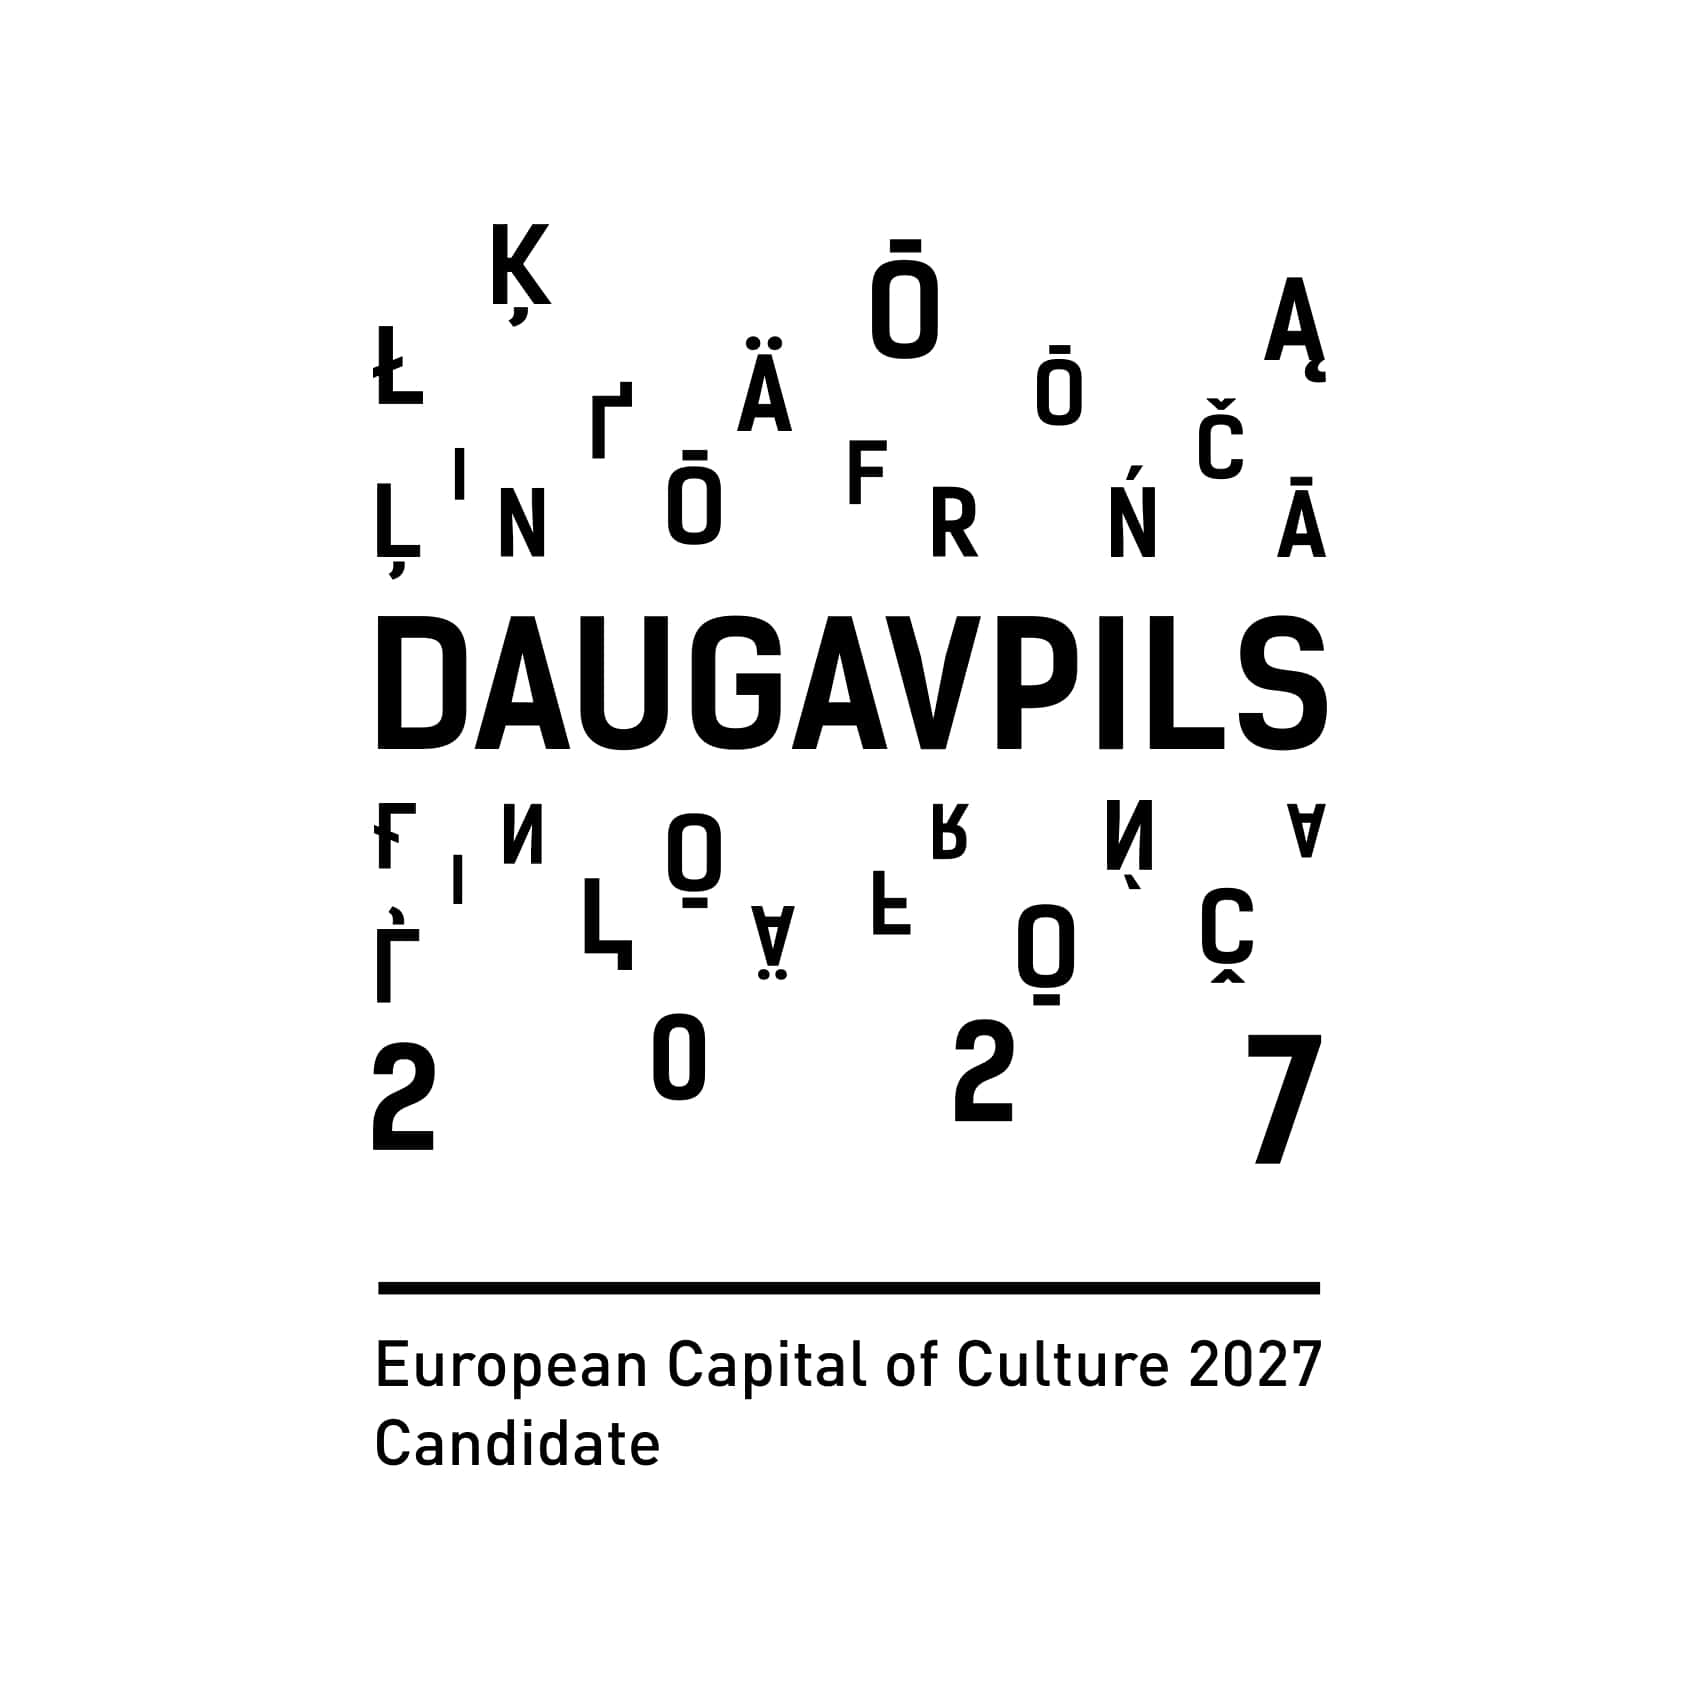 European Capital of Culture 2027 Candidate